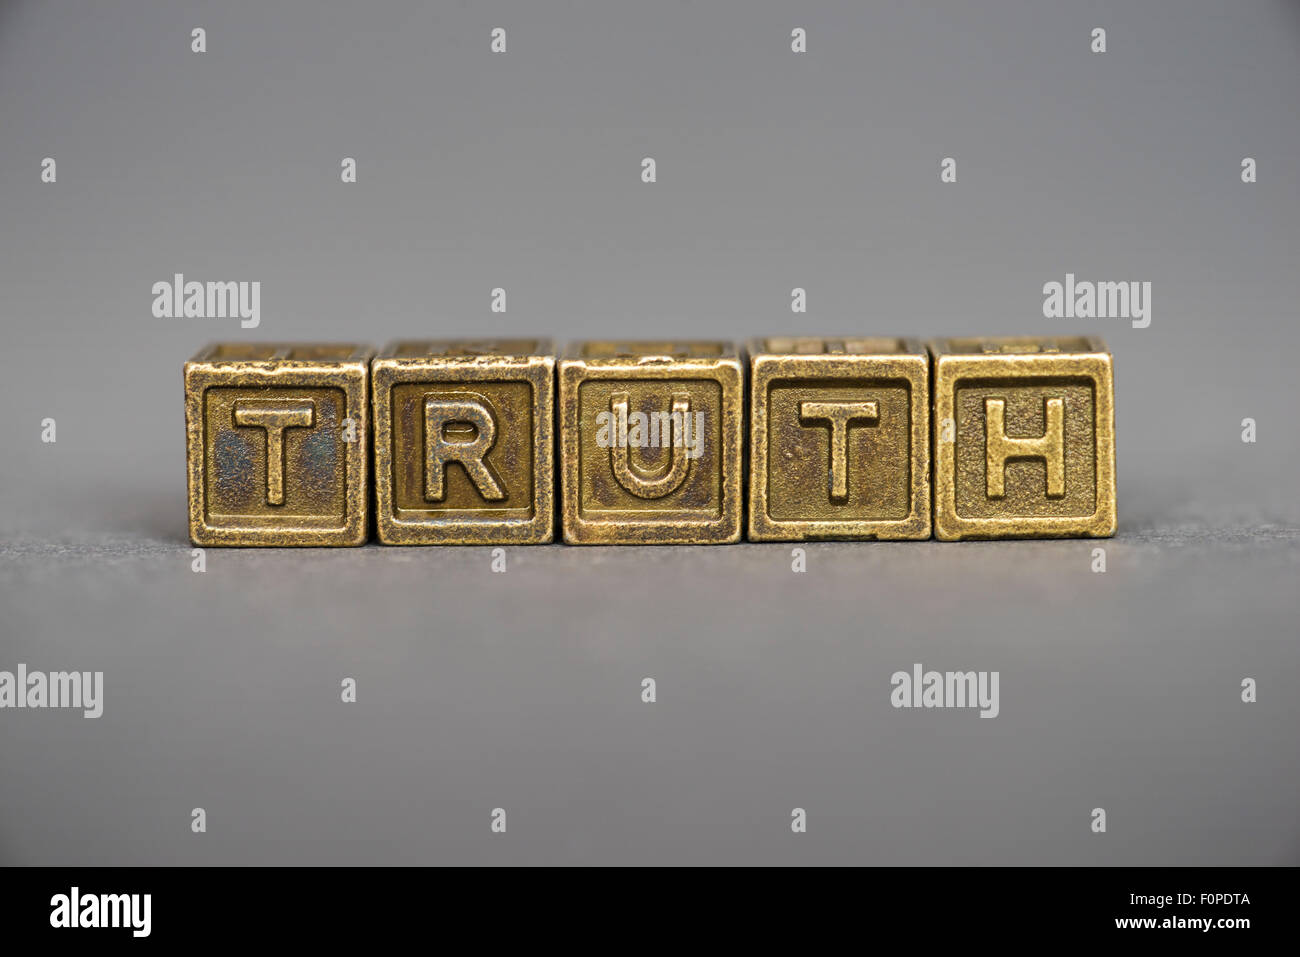 La verdad palabra formada por bloques metálicos sobre fondo gris Foto de stock